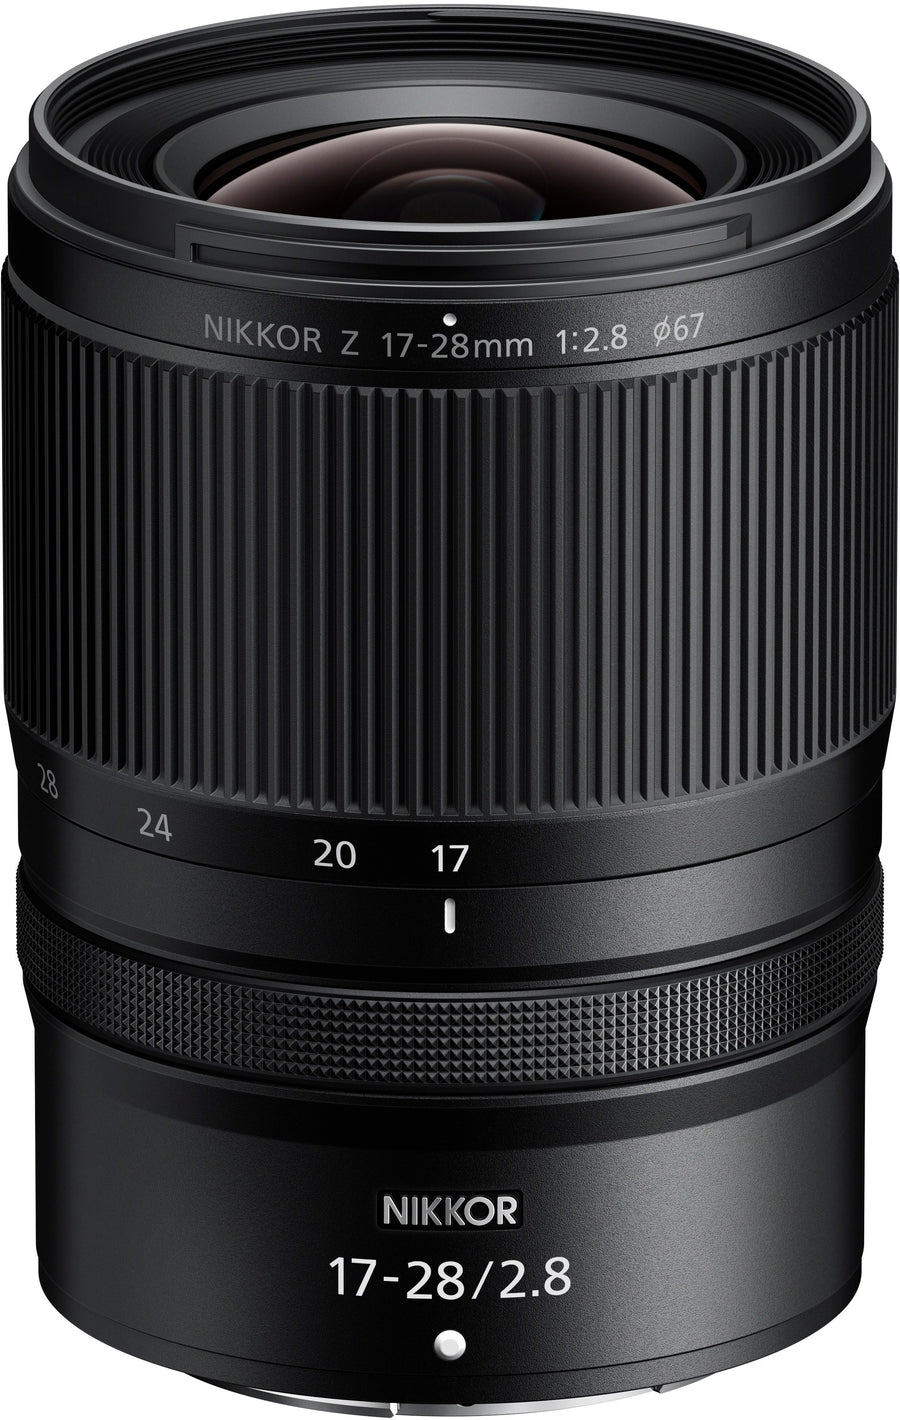 NIKKOR Z 17-28mm f/2.8 Wide Angle Zoom for Nikon Z Cameras - Black_0